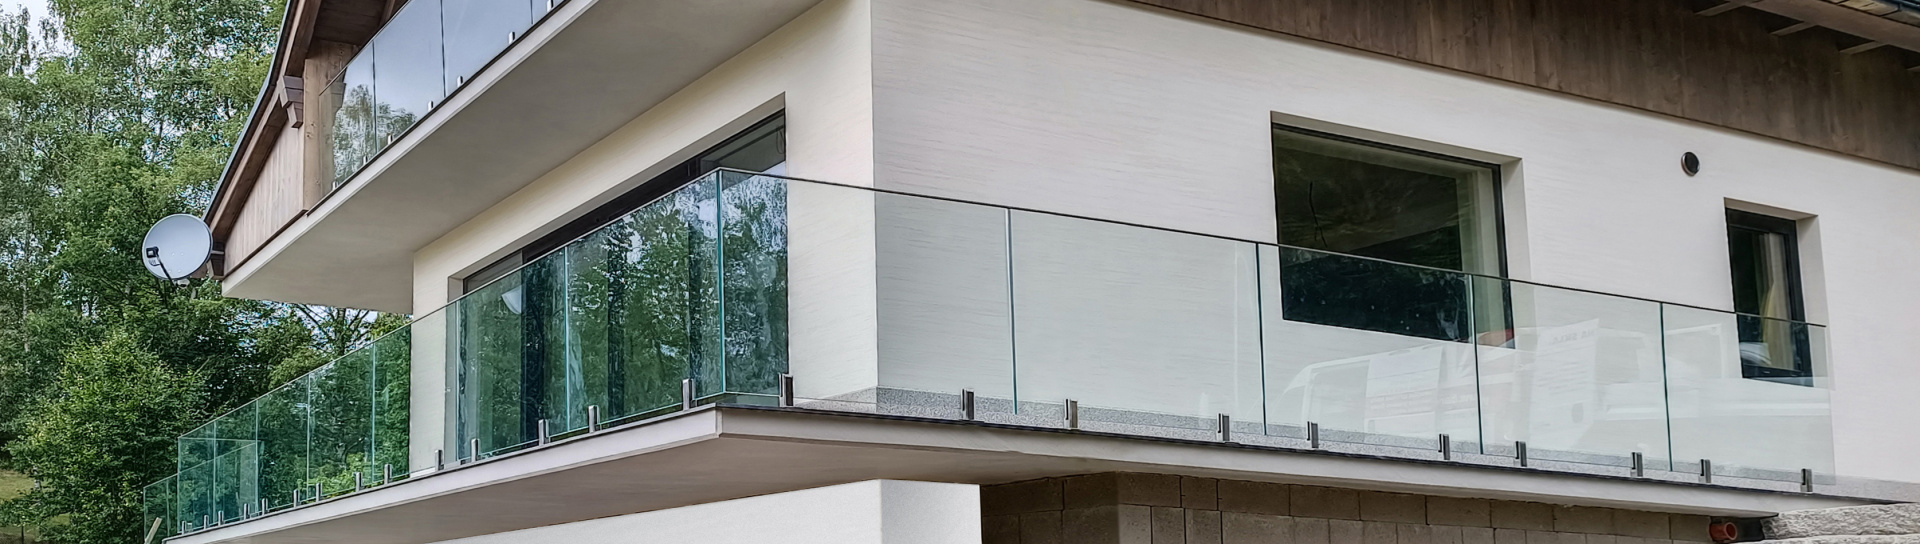 Luxusní skleněné zábradlí na míru na schody, balkony i terasy